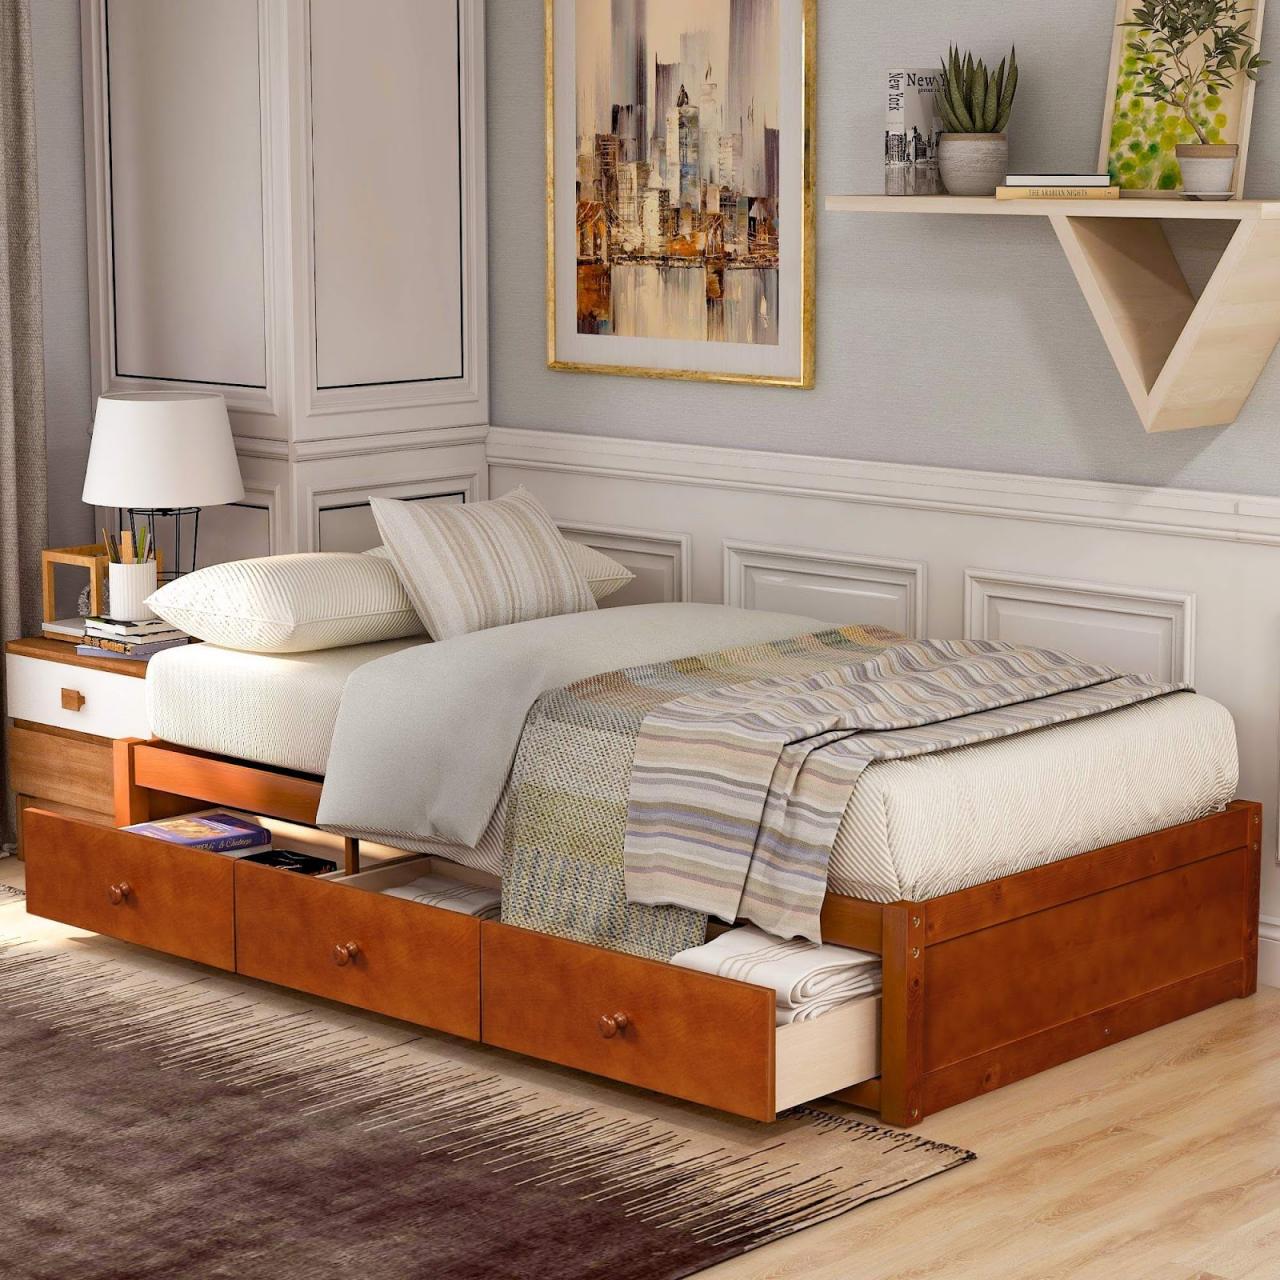 Mẫu giường gỗ có ngăn kéo vân gỗ sáng hài hòa với mọi không gian.